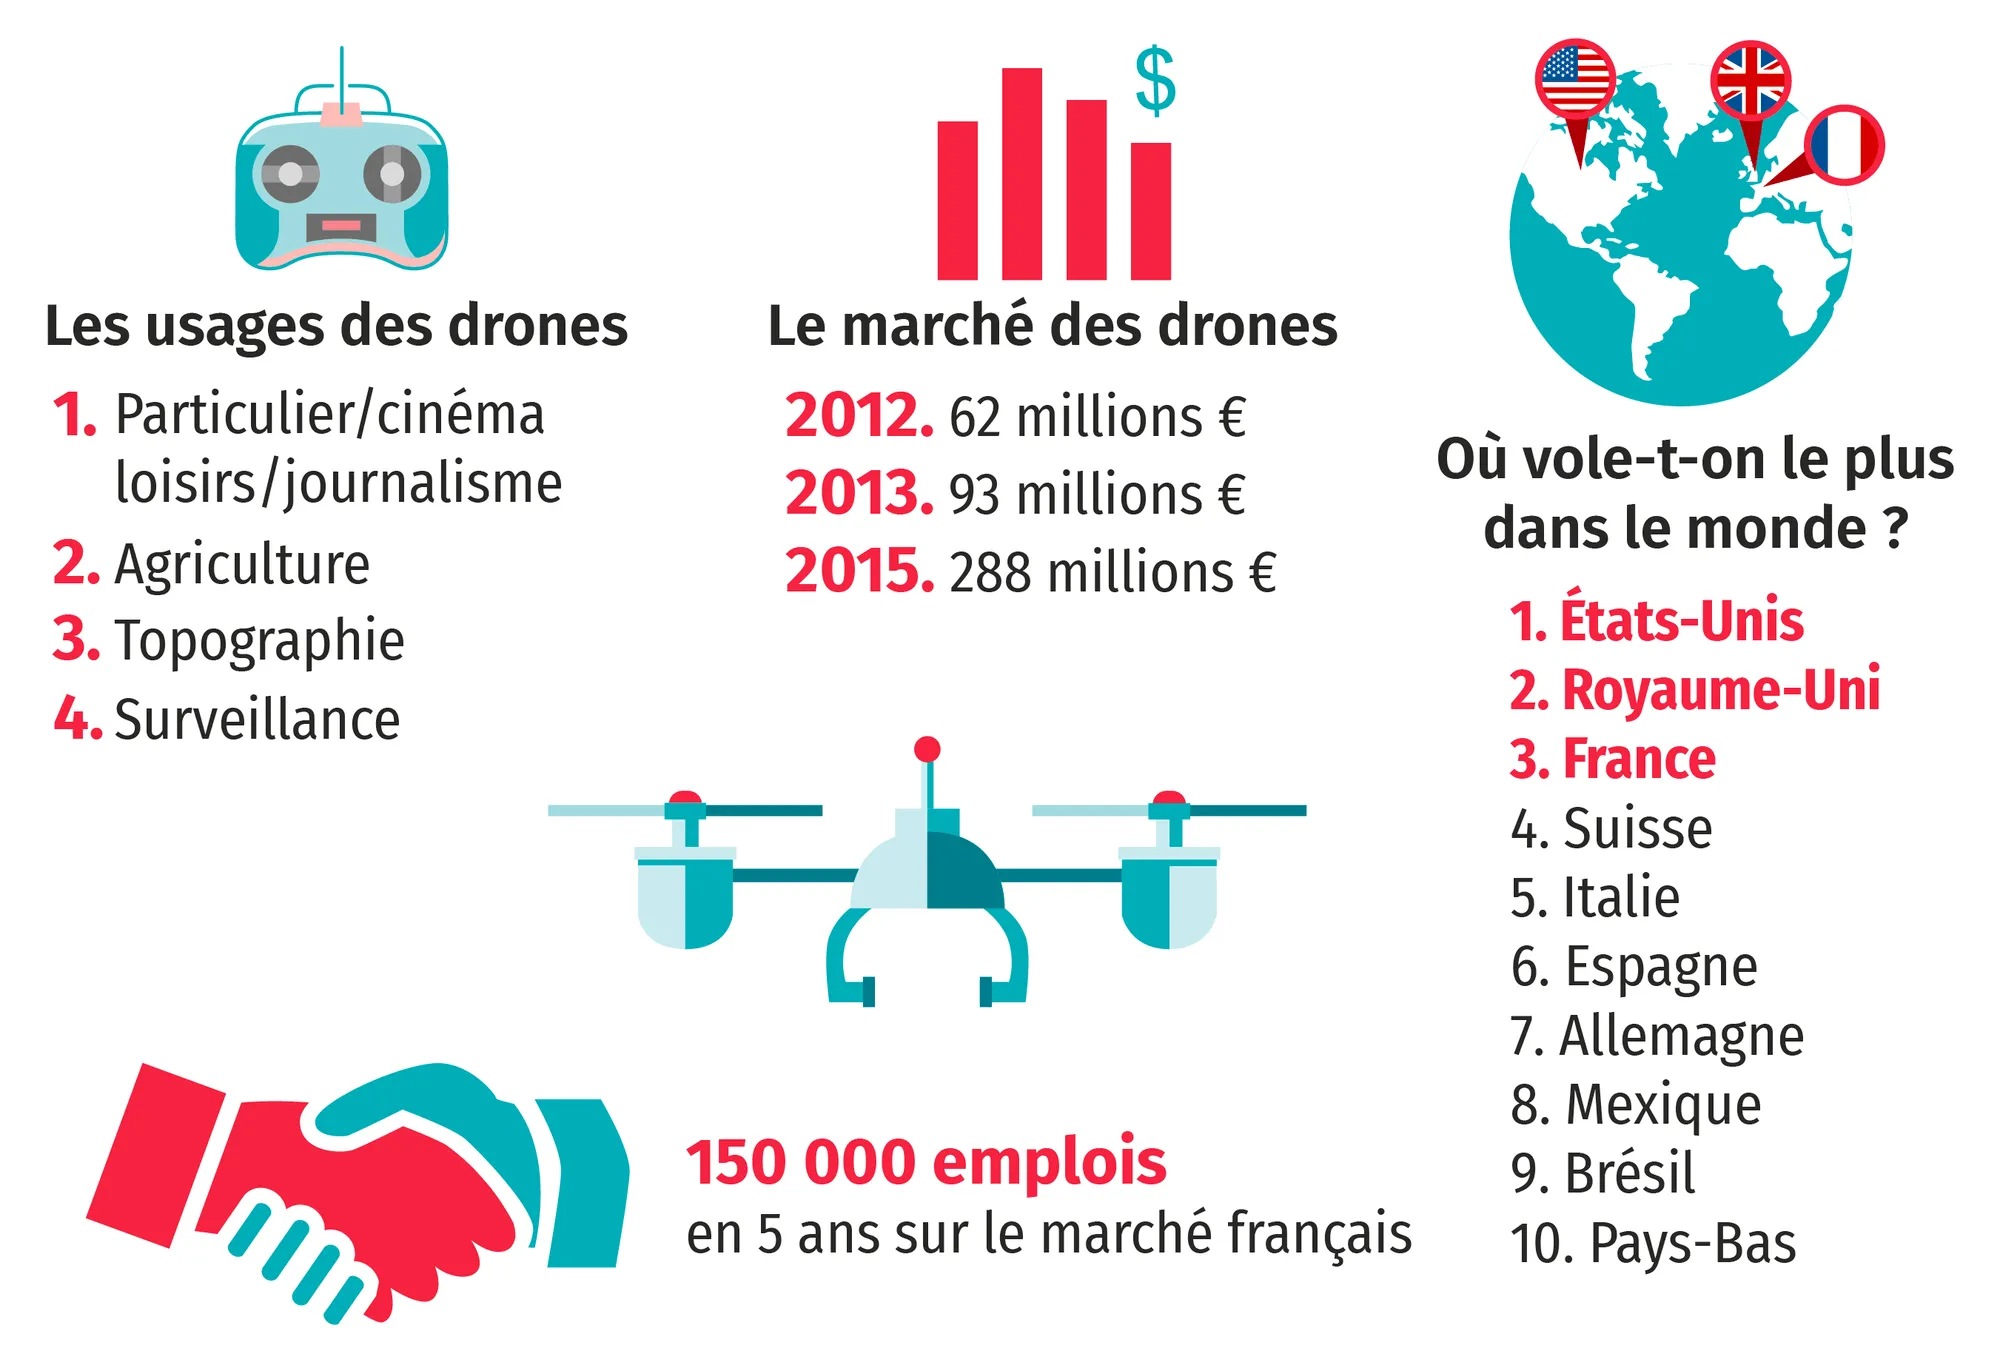 Les drones en quelques chiffres